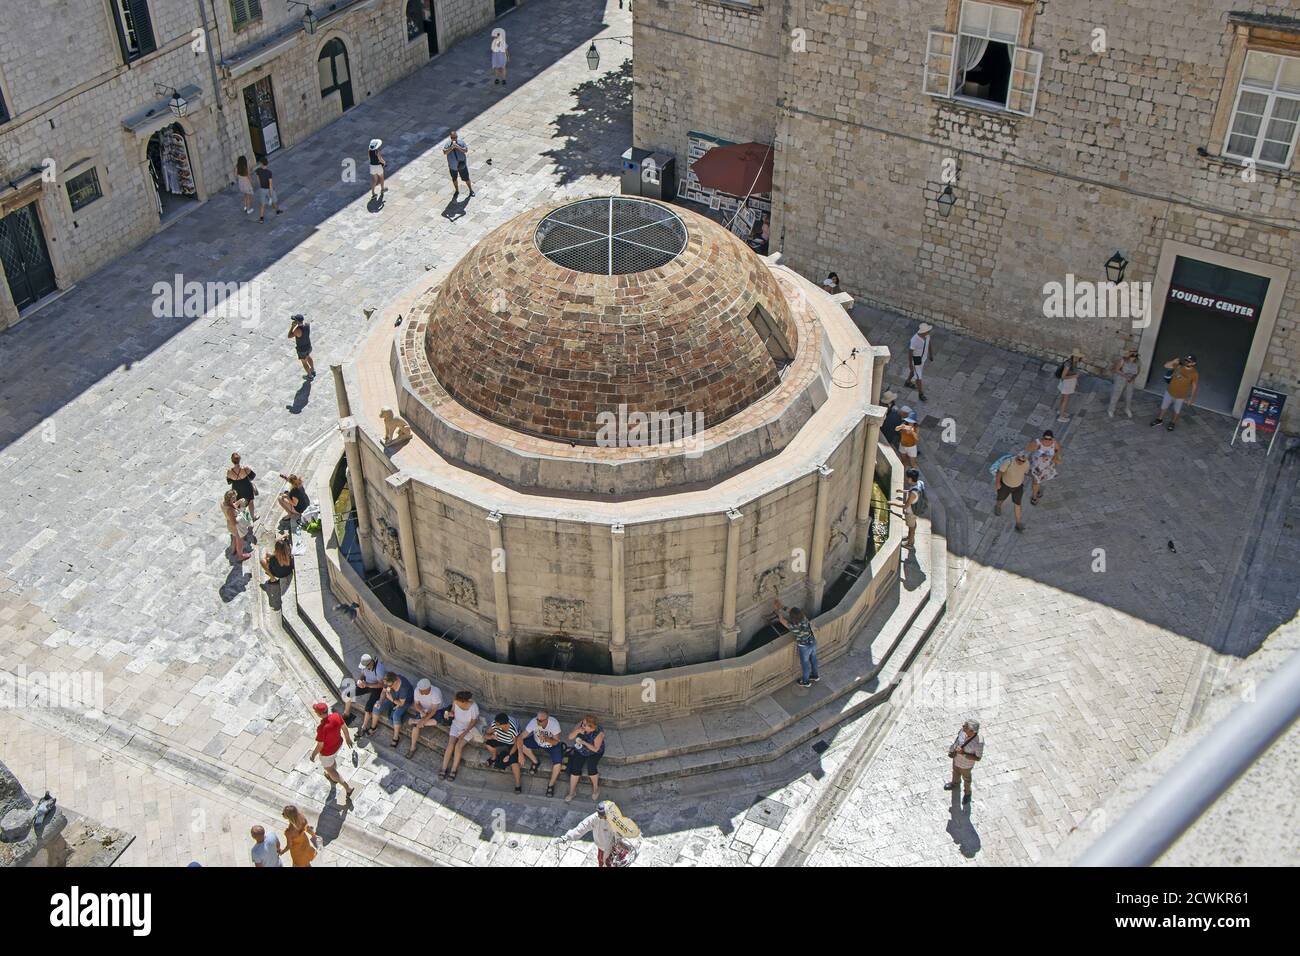 Dubrovnik, Croatie - 04 septembre 2020 : beaucoup de touristes près de la grande fontaine Onfrio avec de l'eau Banque D'Images